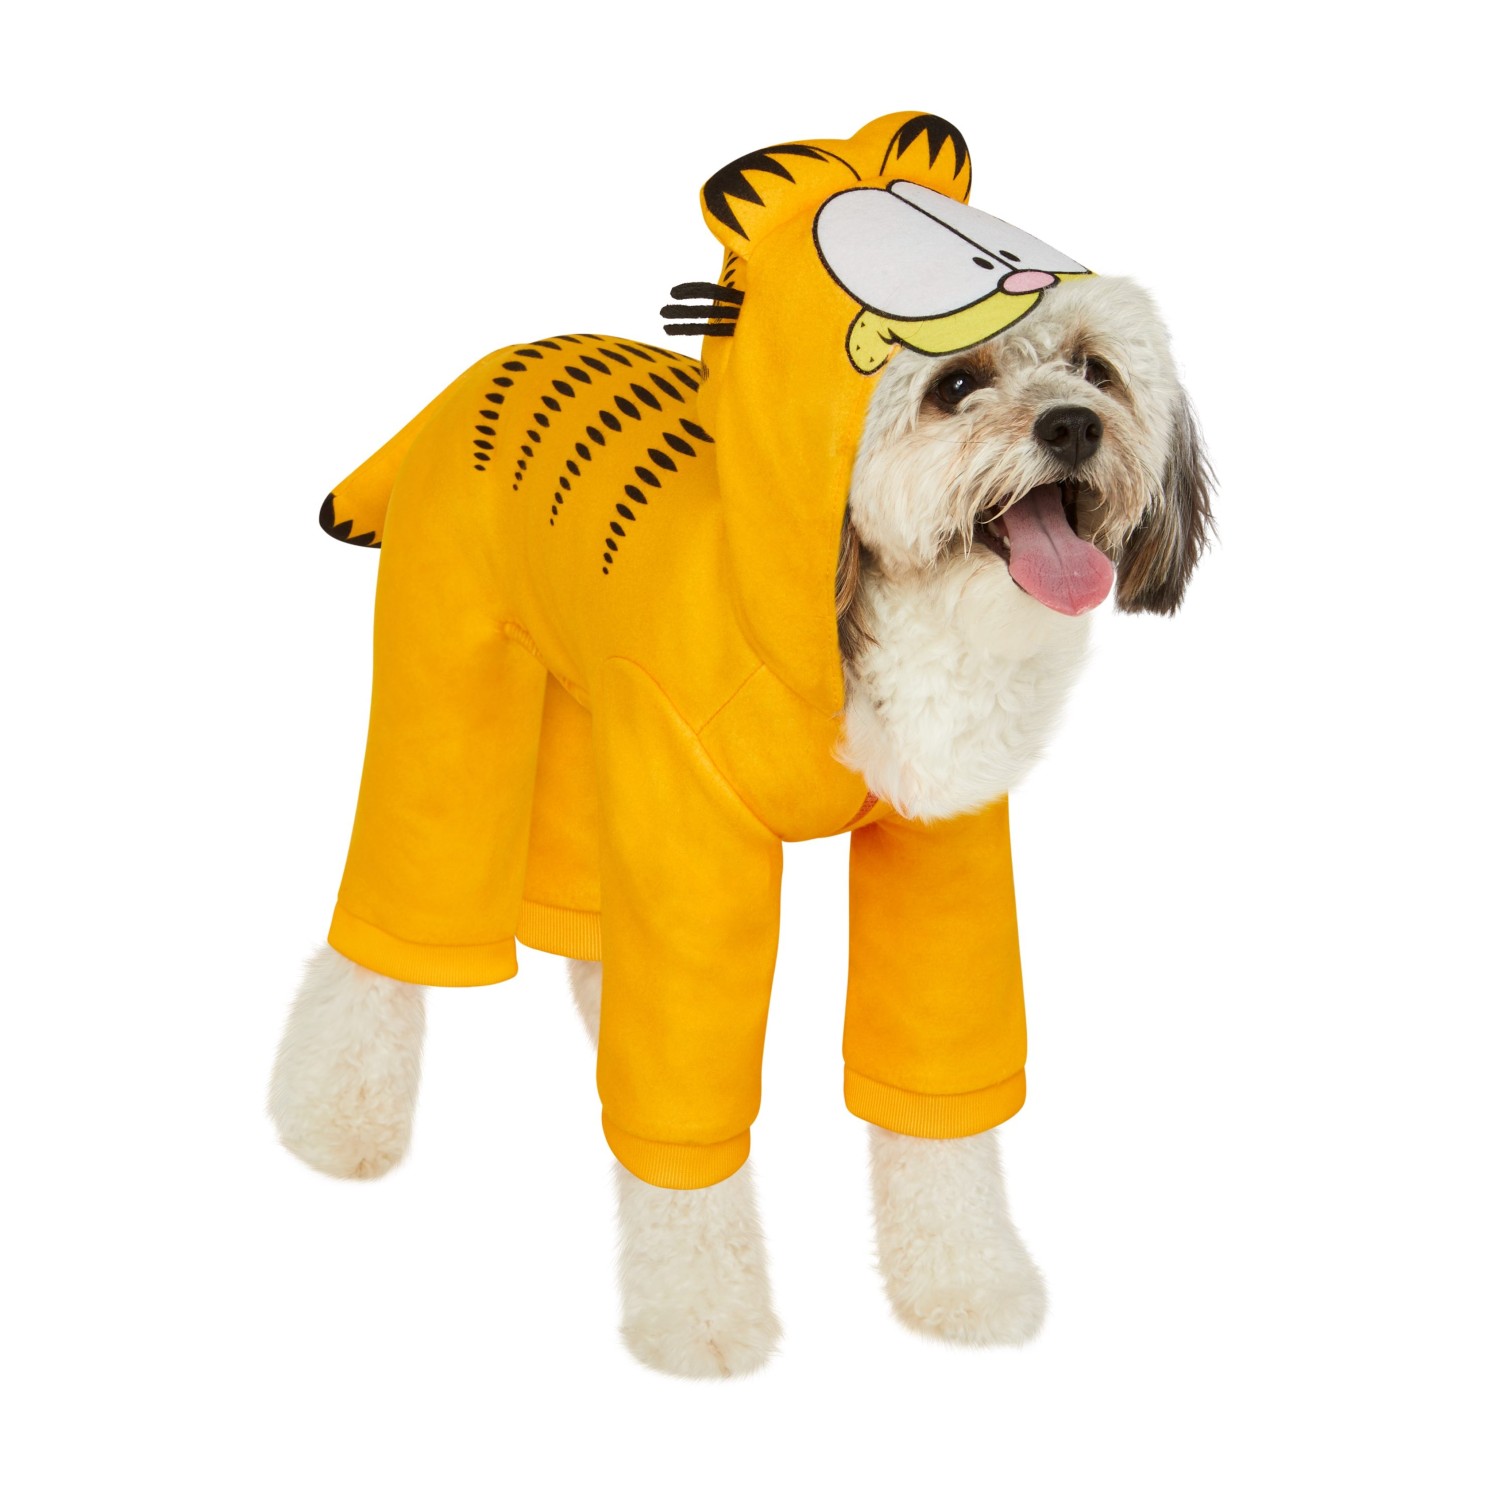 Garfield Dog Costume by Rubies